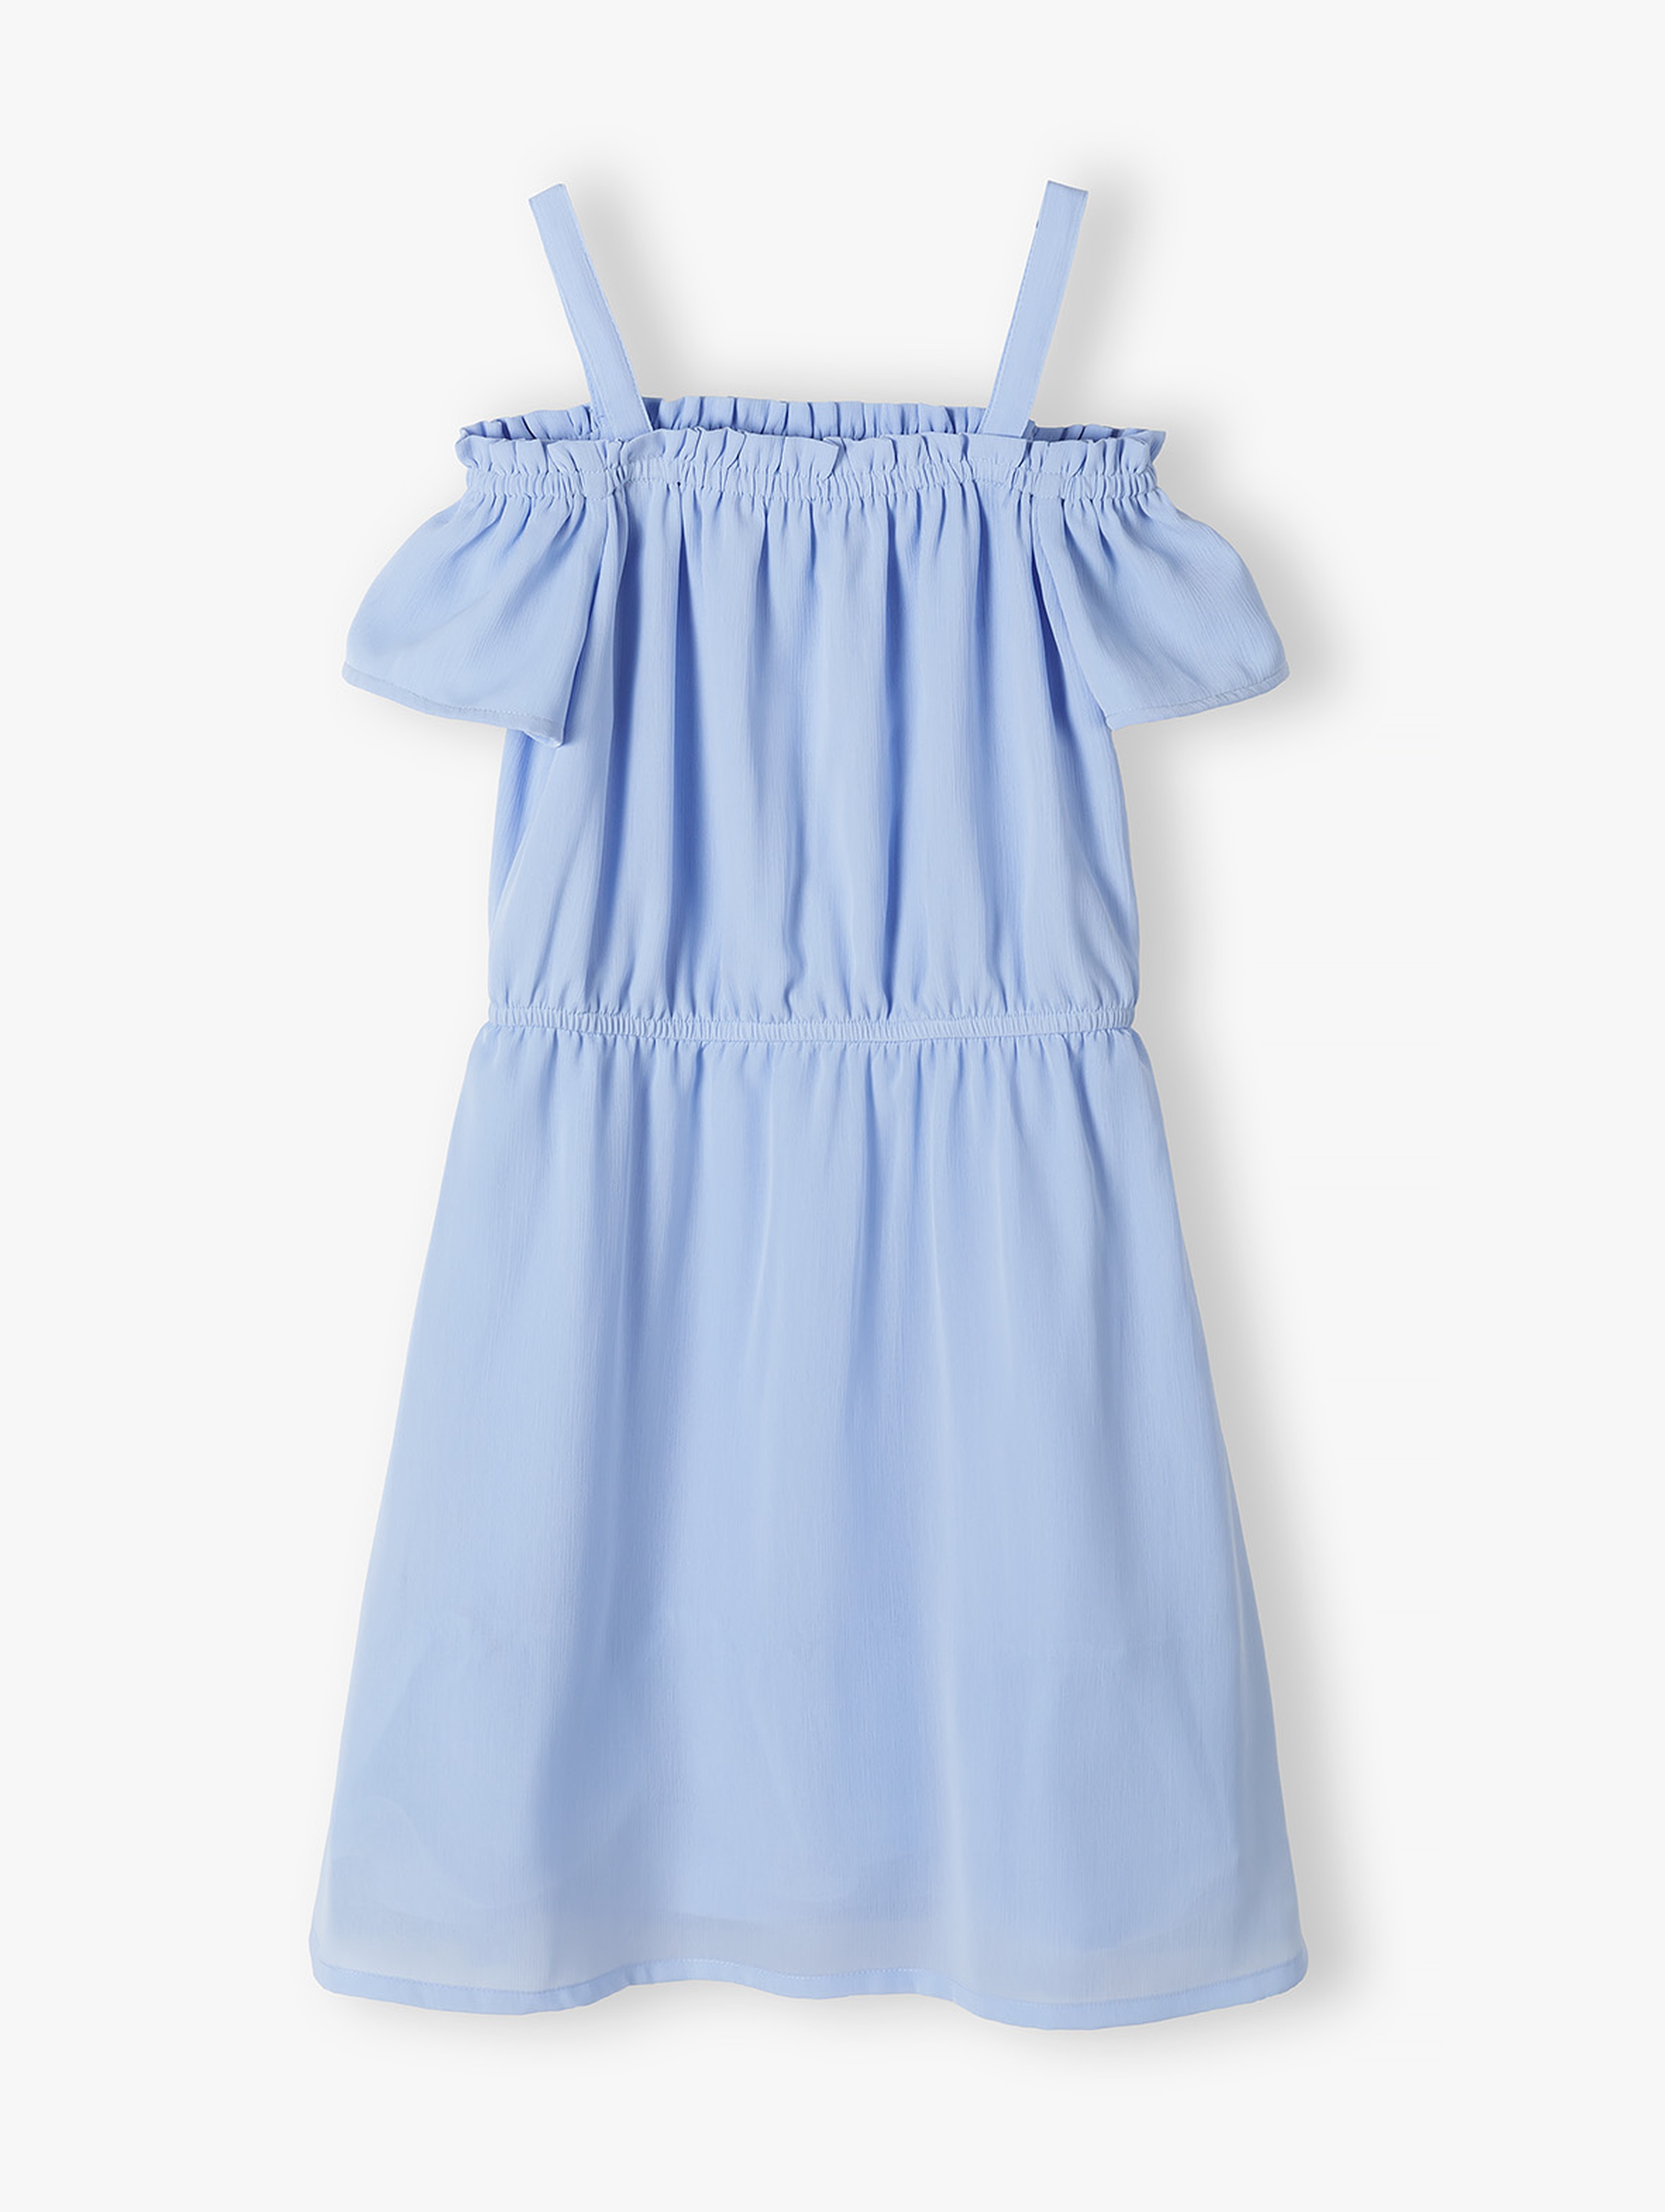 Niebieska sukienka hiszpanka dla dziewczynki